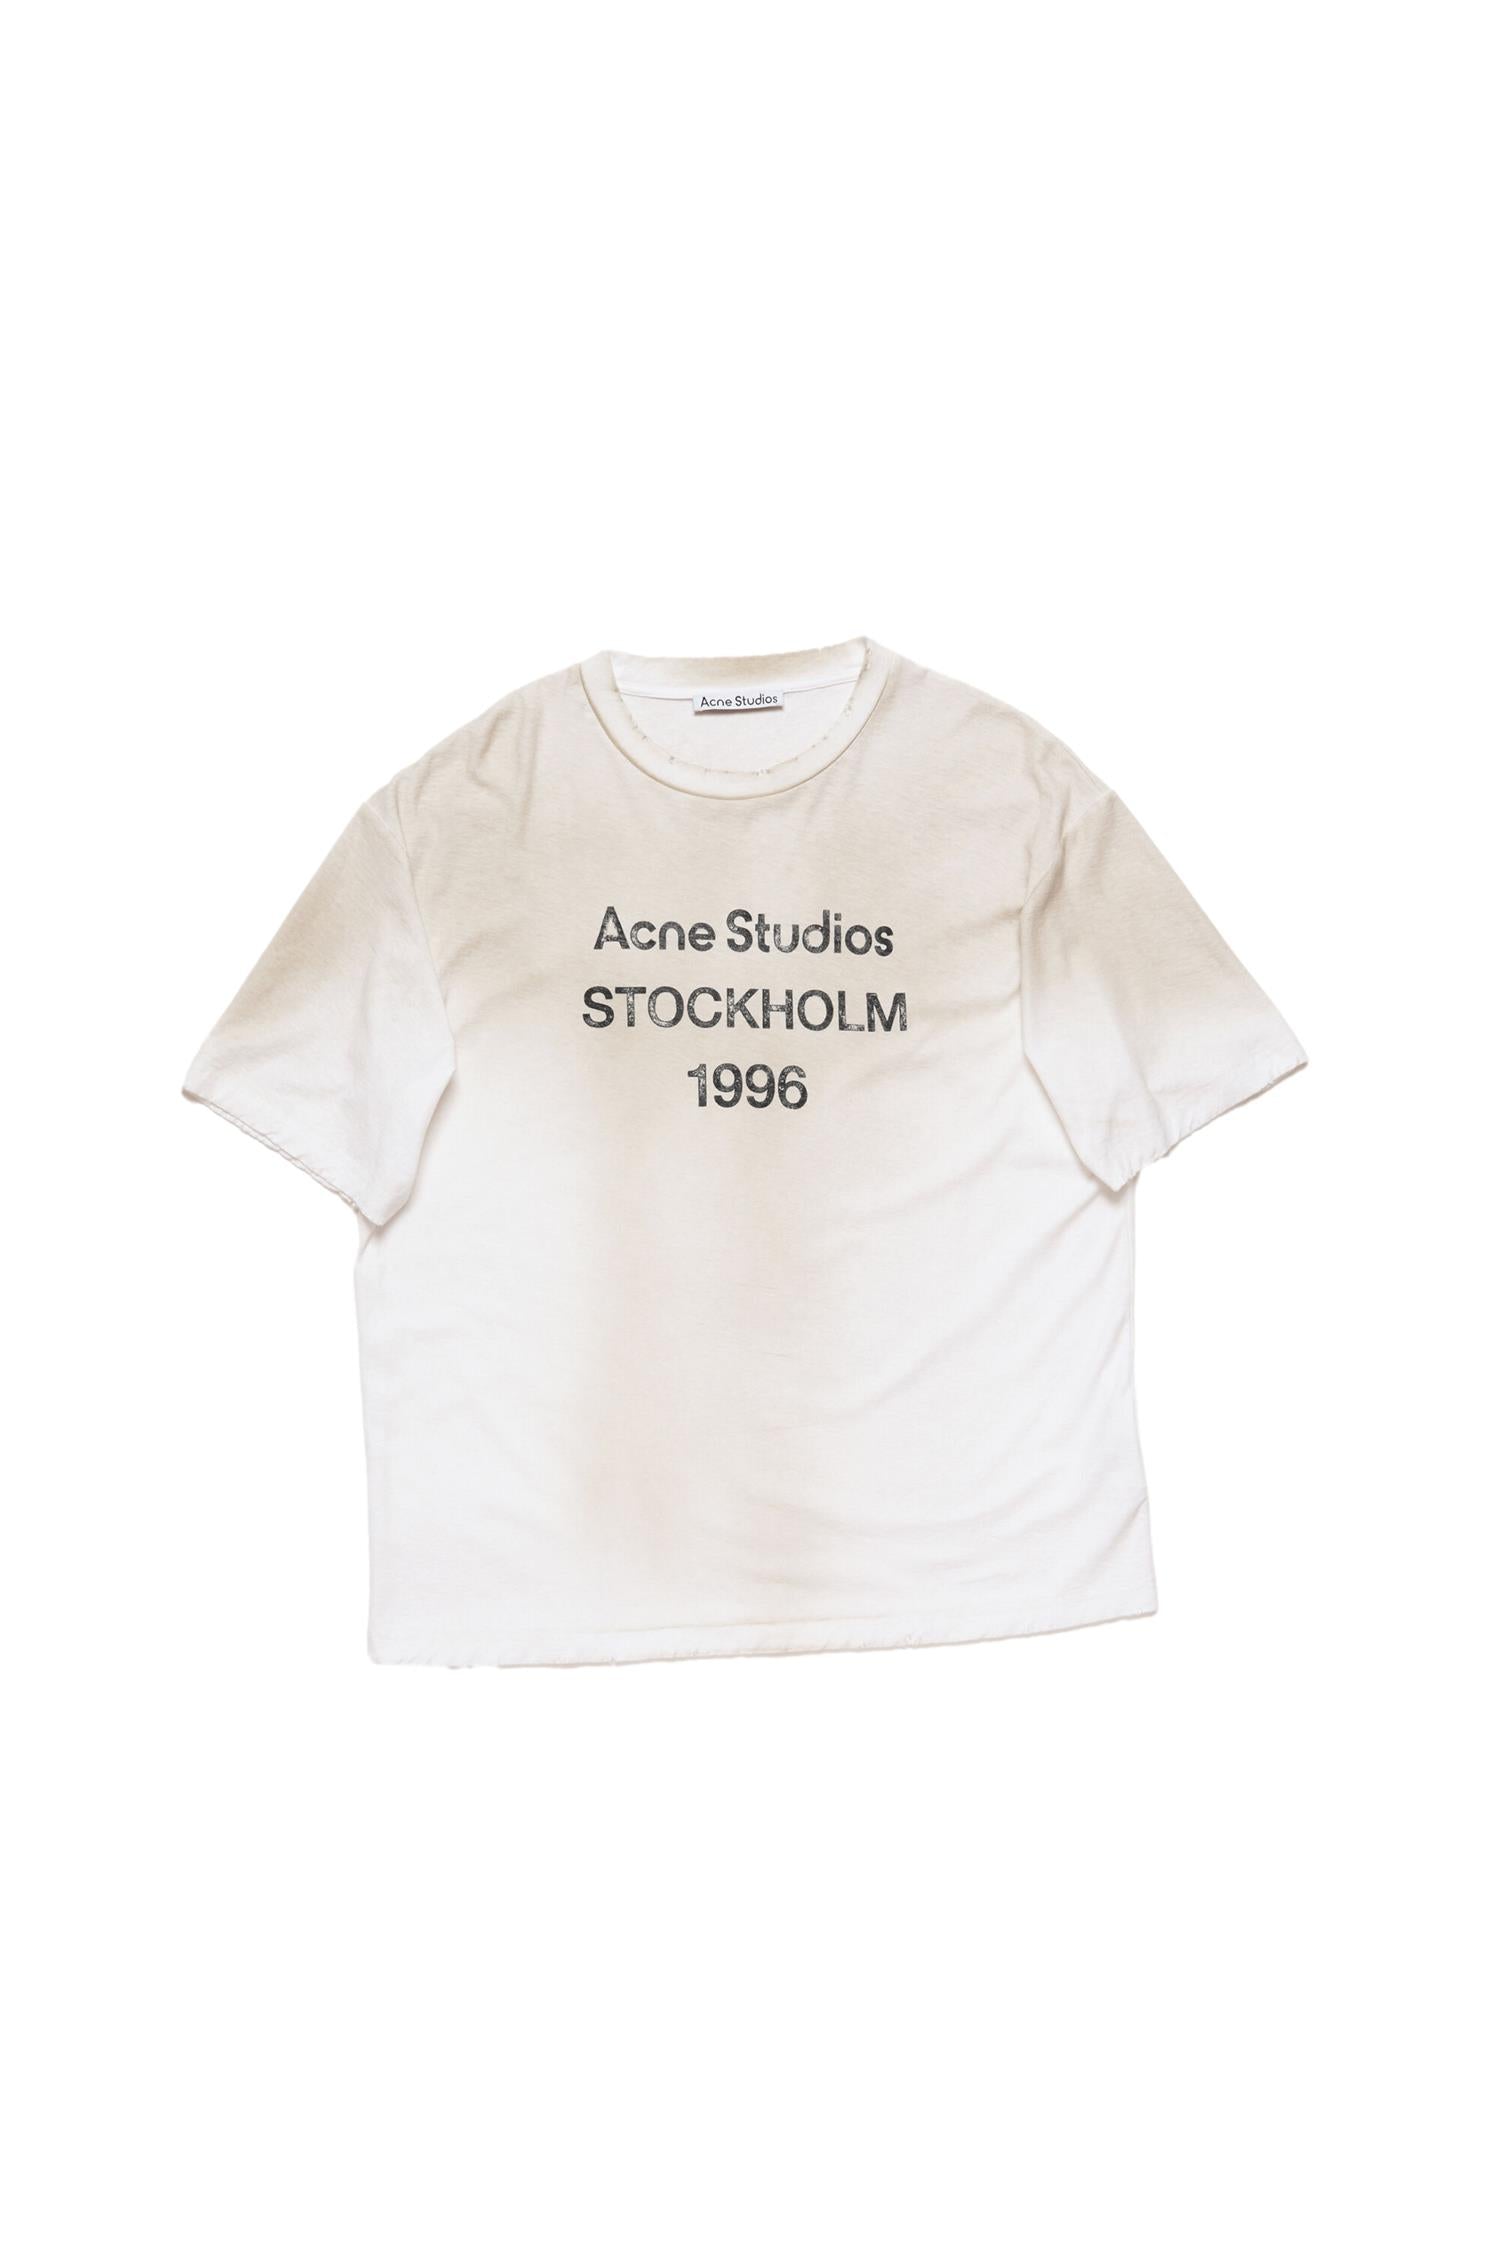 Acne Logo Shirt Relaxed T-shirt Off-White - [modostore.no]